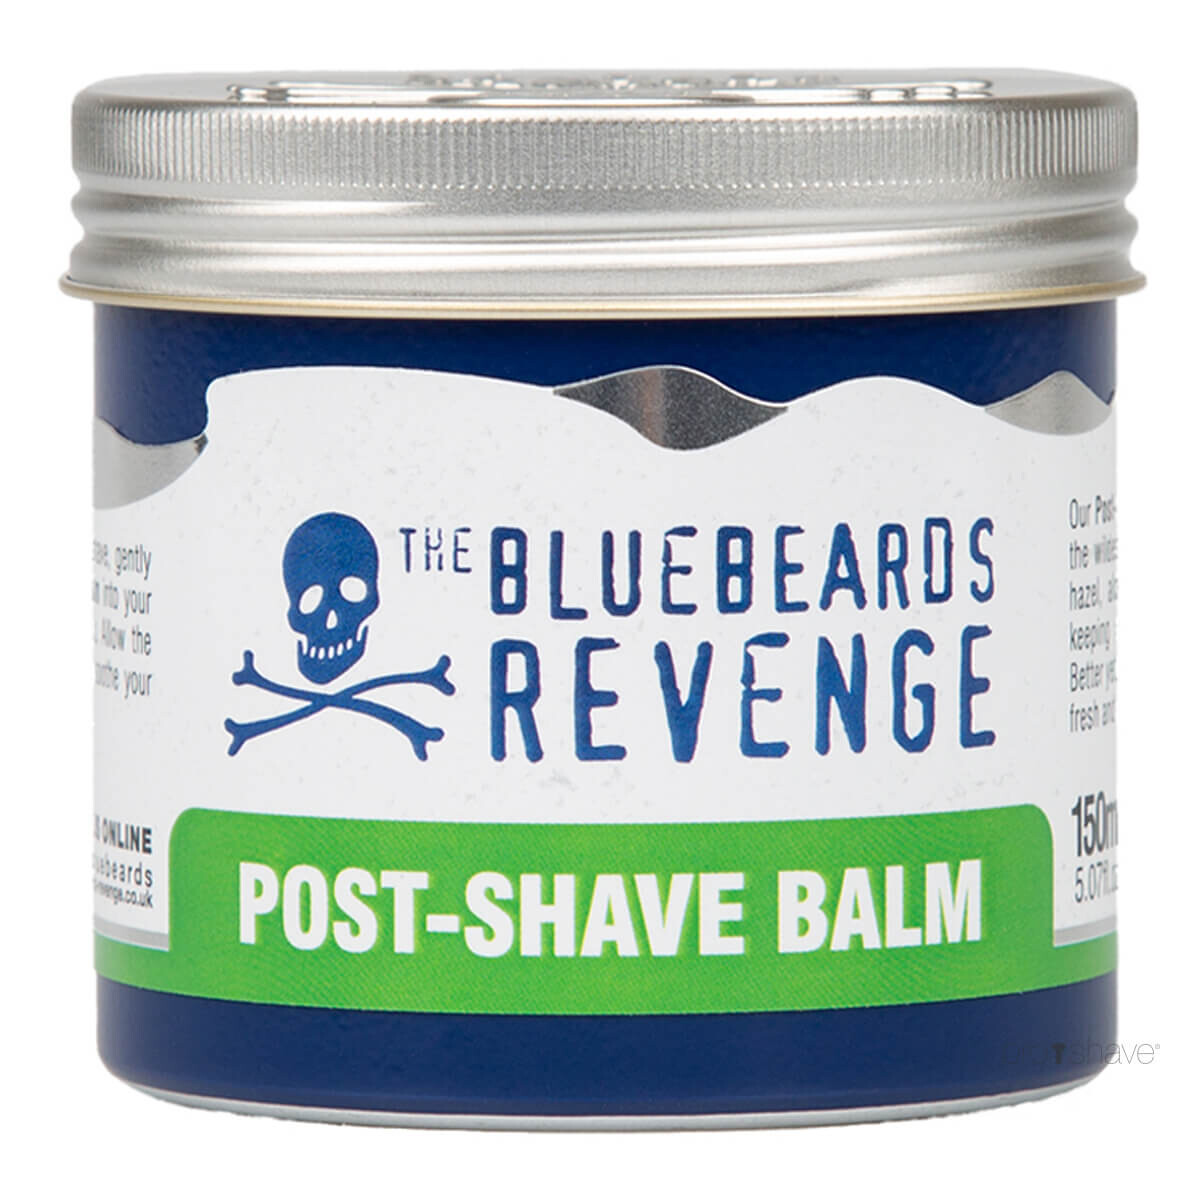 Billede af Bluebeards Revenge Post Shave Balm, 150 ml.